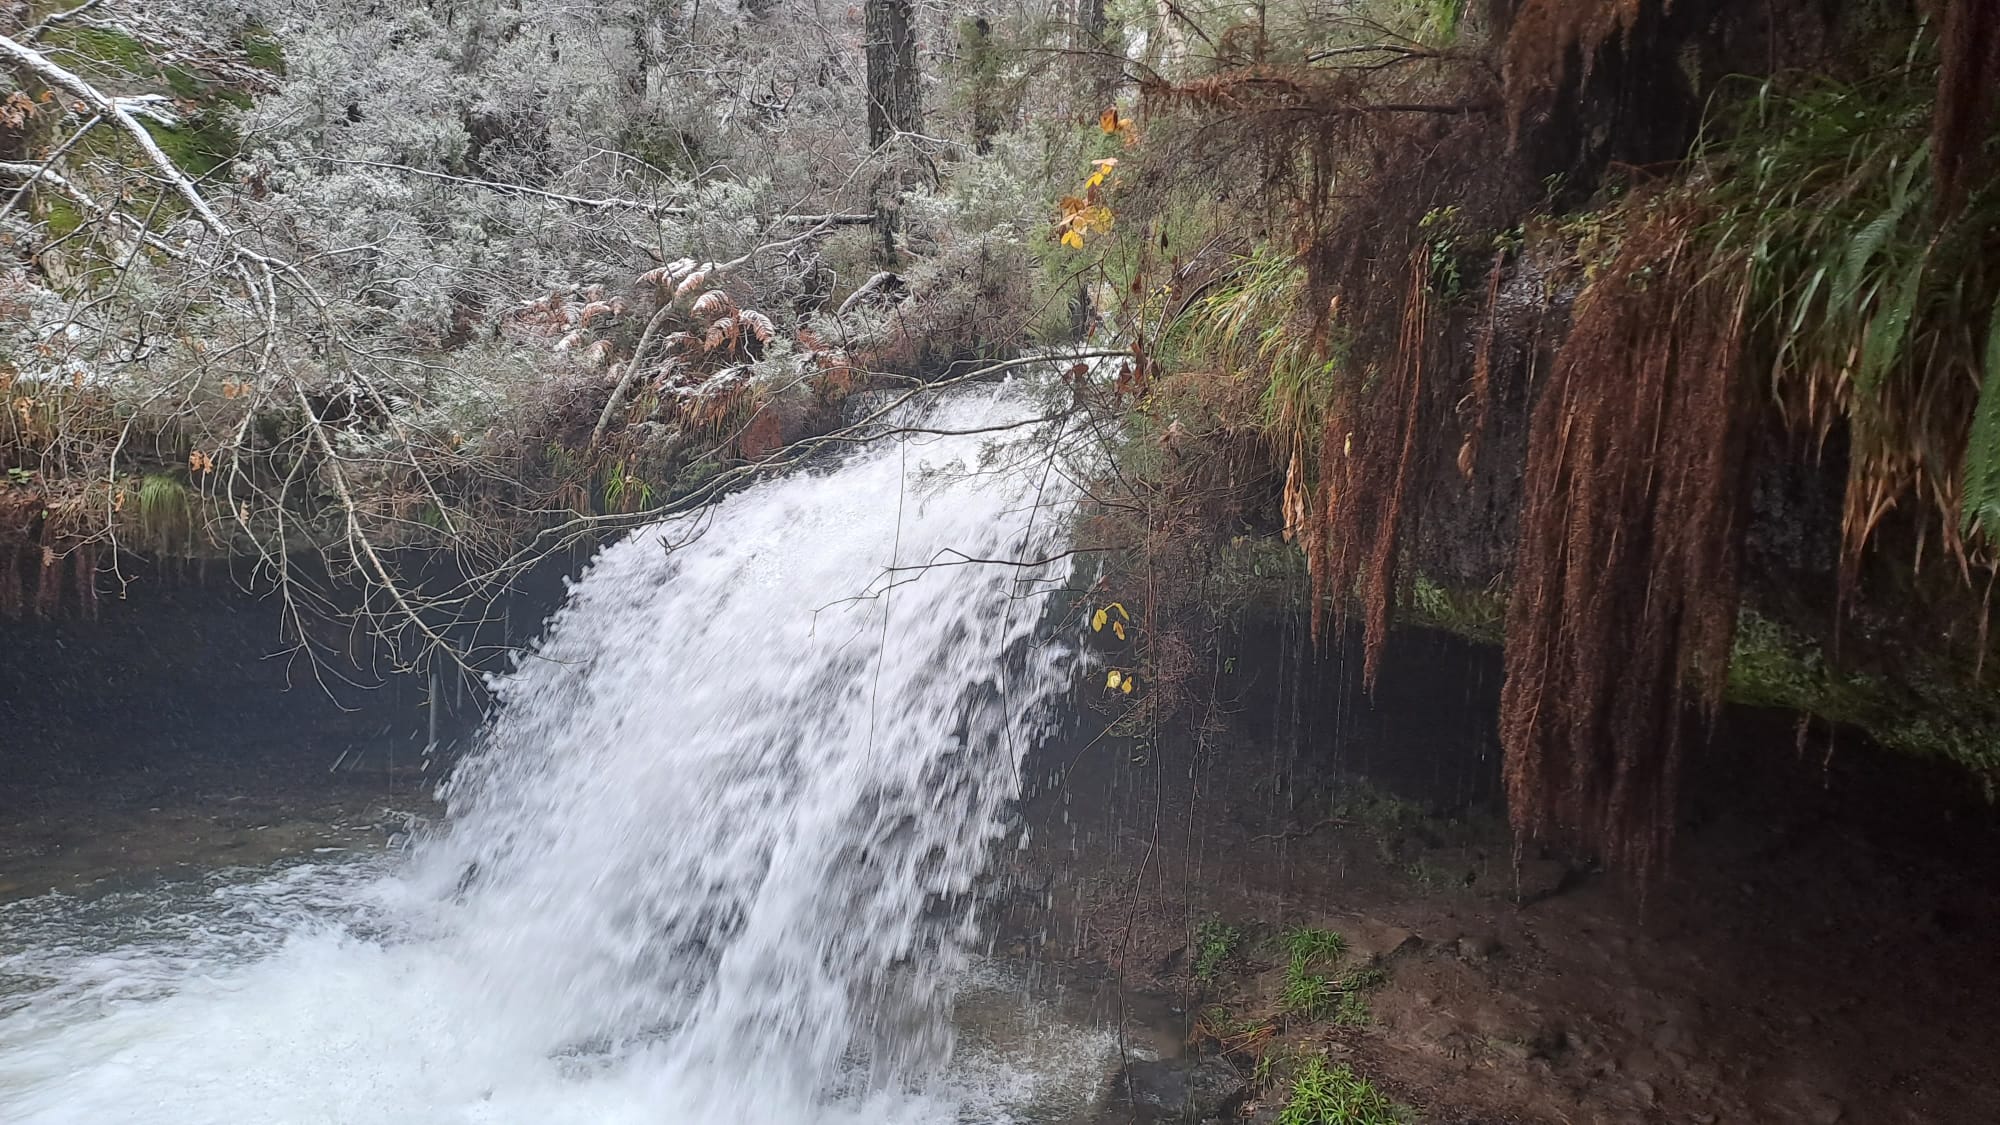 Arranca el invierno meteorológico tras uno de los otoños más lluviosos en Pinares du…